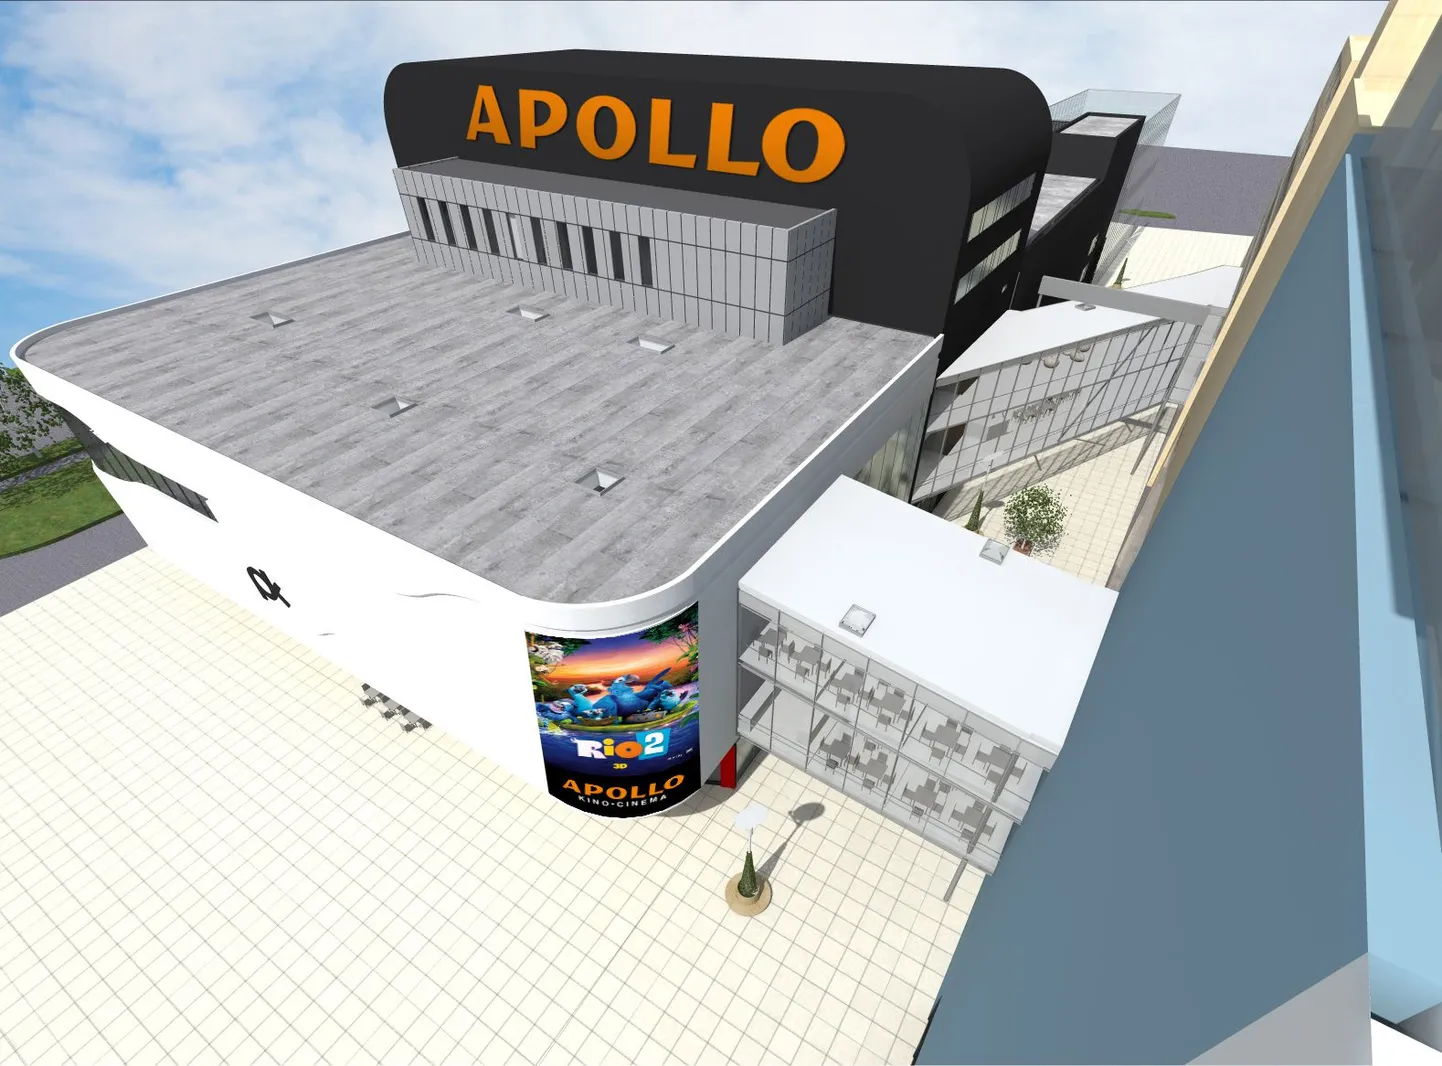 Raamatukauplusekett Apollo avab maikuus Pärnu Keskuse juurdeehituses uue raamatu- ja meelelahutuskaupluse ning esimese Apollo kino.